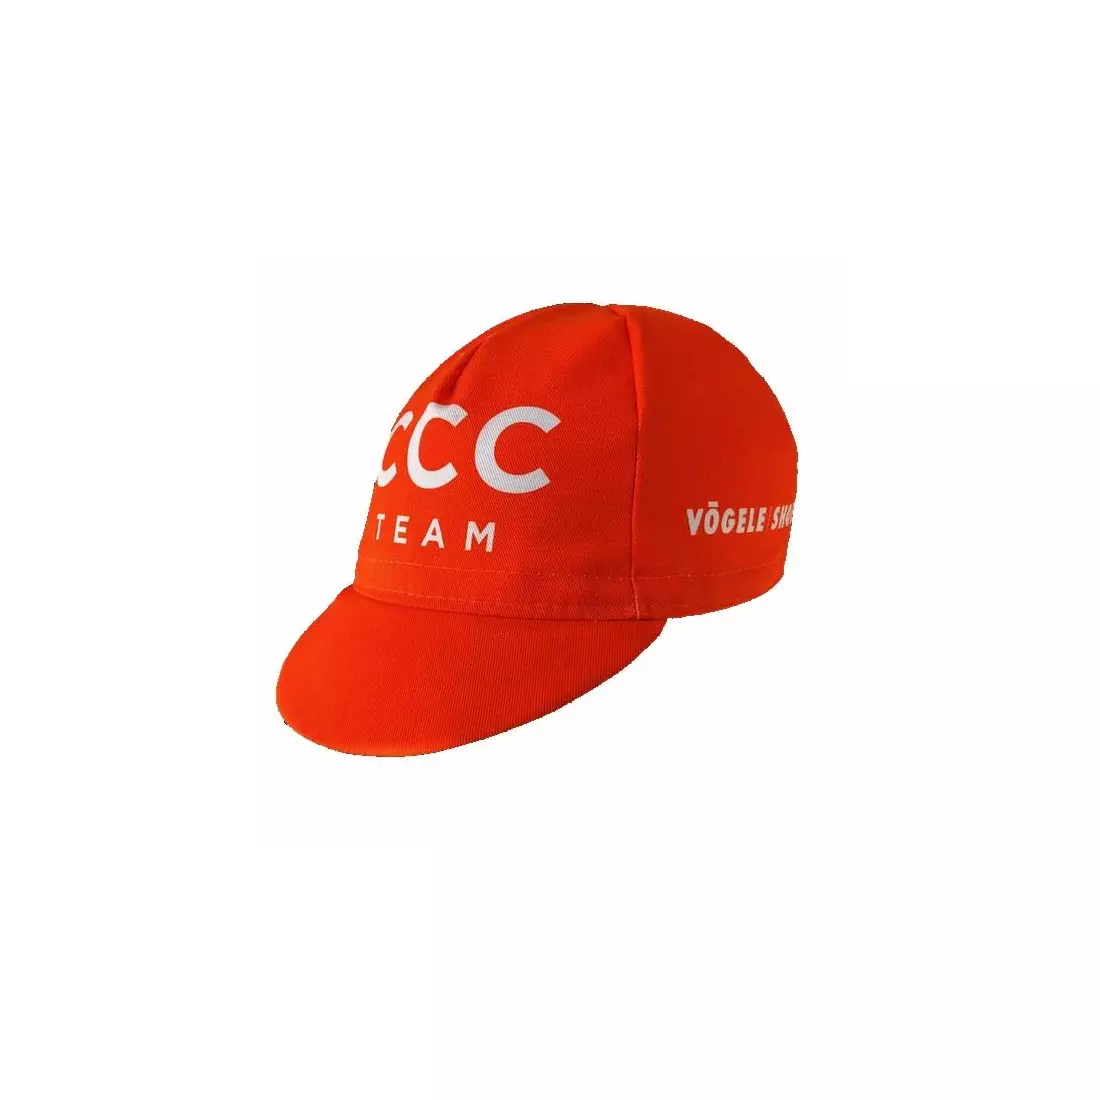 APIS PROFI CCC cycling cap with visor